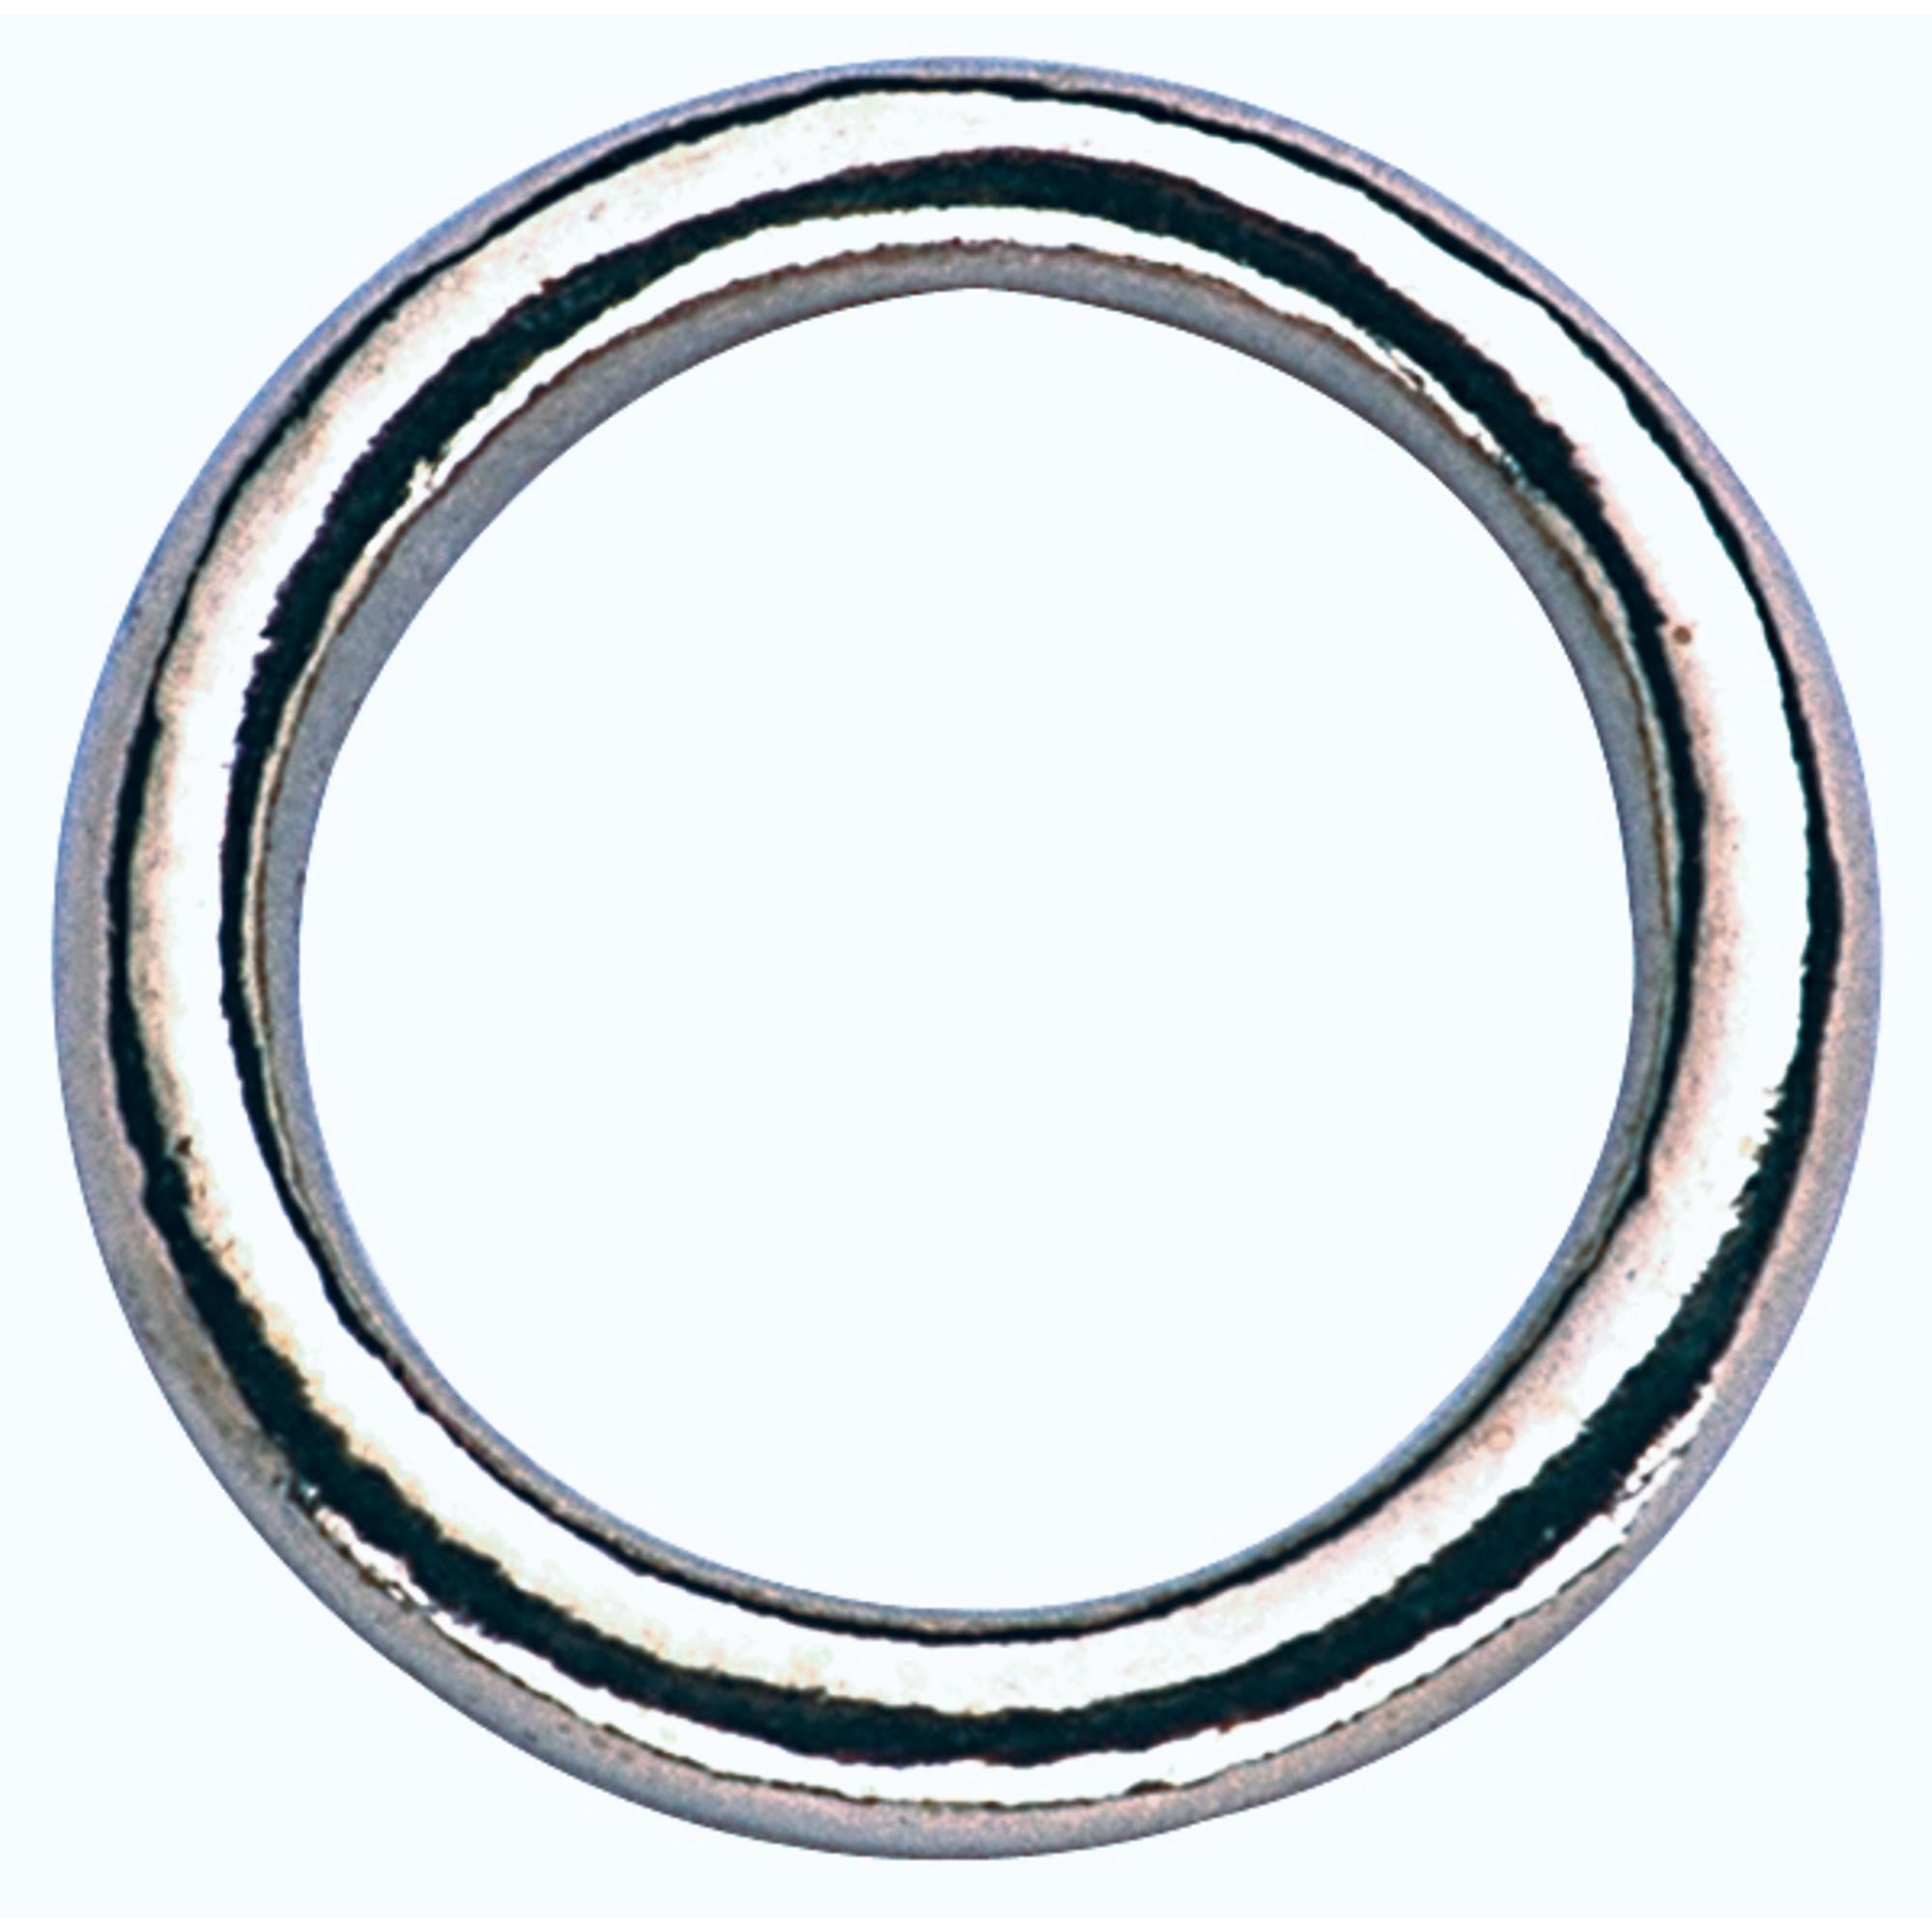 Ring - Edelstahl rostfrei, 36/25 mm | 3026002555.jpg | 1700897805